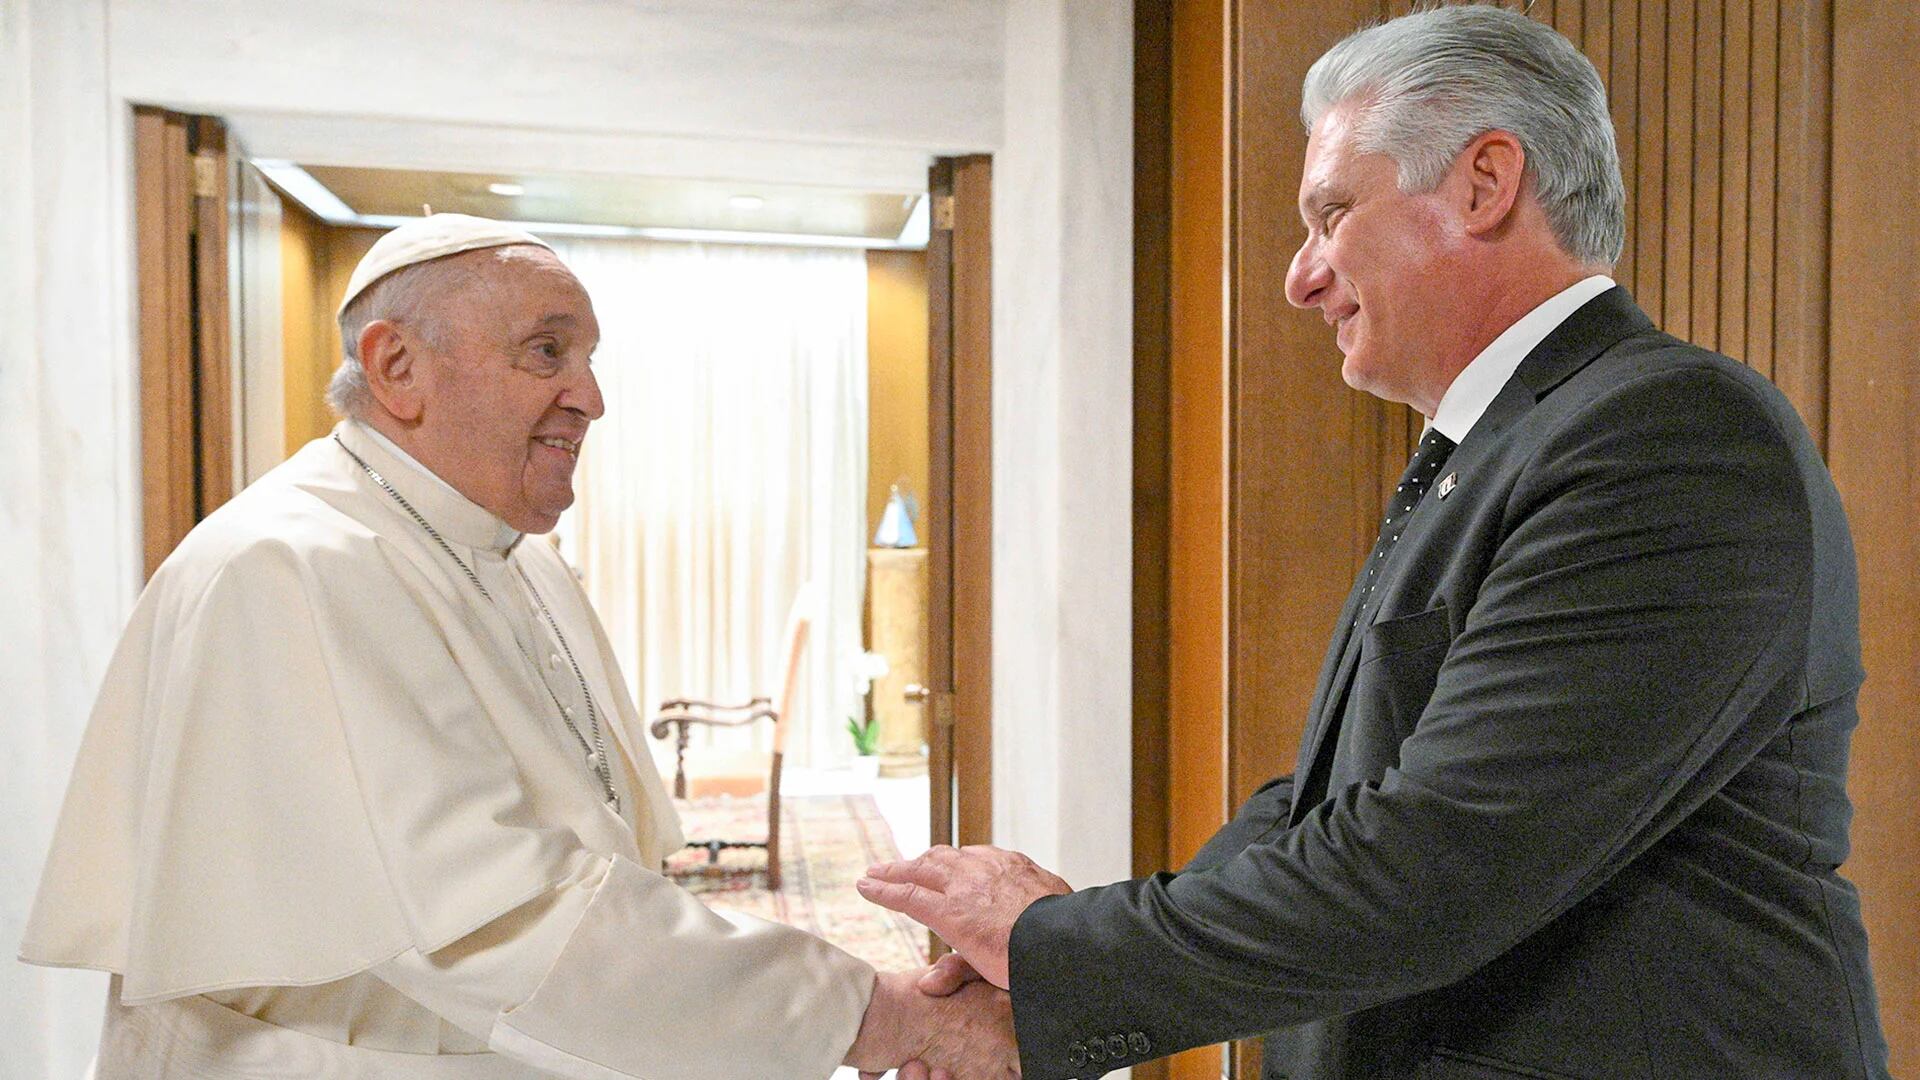 El papa Francisco y el dictador cubano Miguel Díaz-Canel conversaron durante 40 minutos en el Vaticano